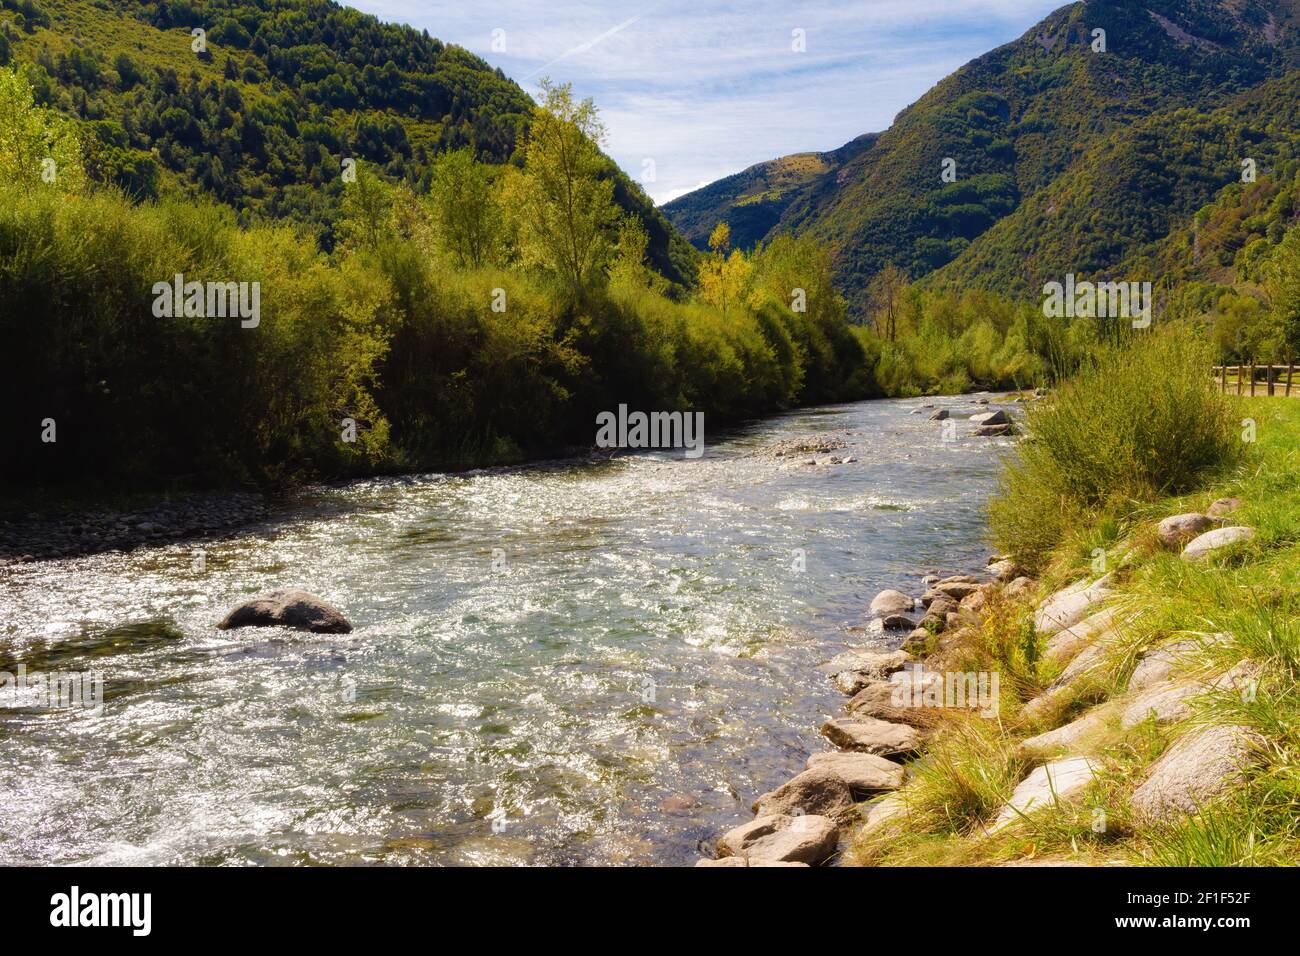 Vue sur la rivière Noguera de Tor qui traverse la ville de Barruera dans la vallée de Boi. - Catalogne, Espagne Banque D'Images